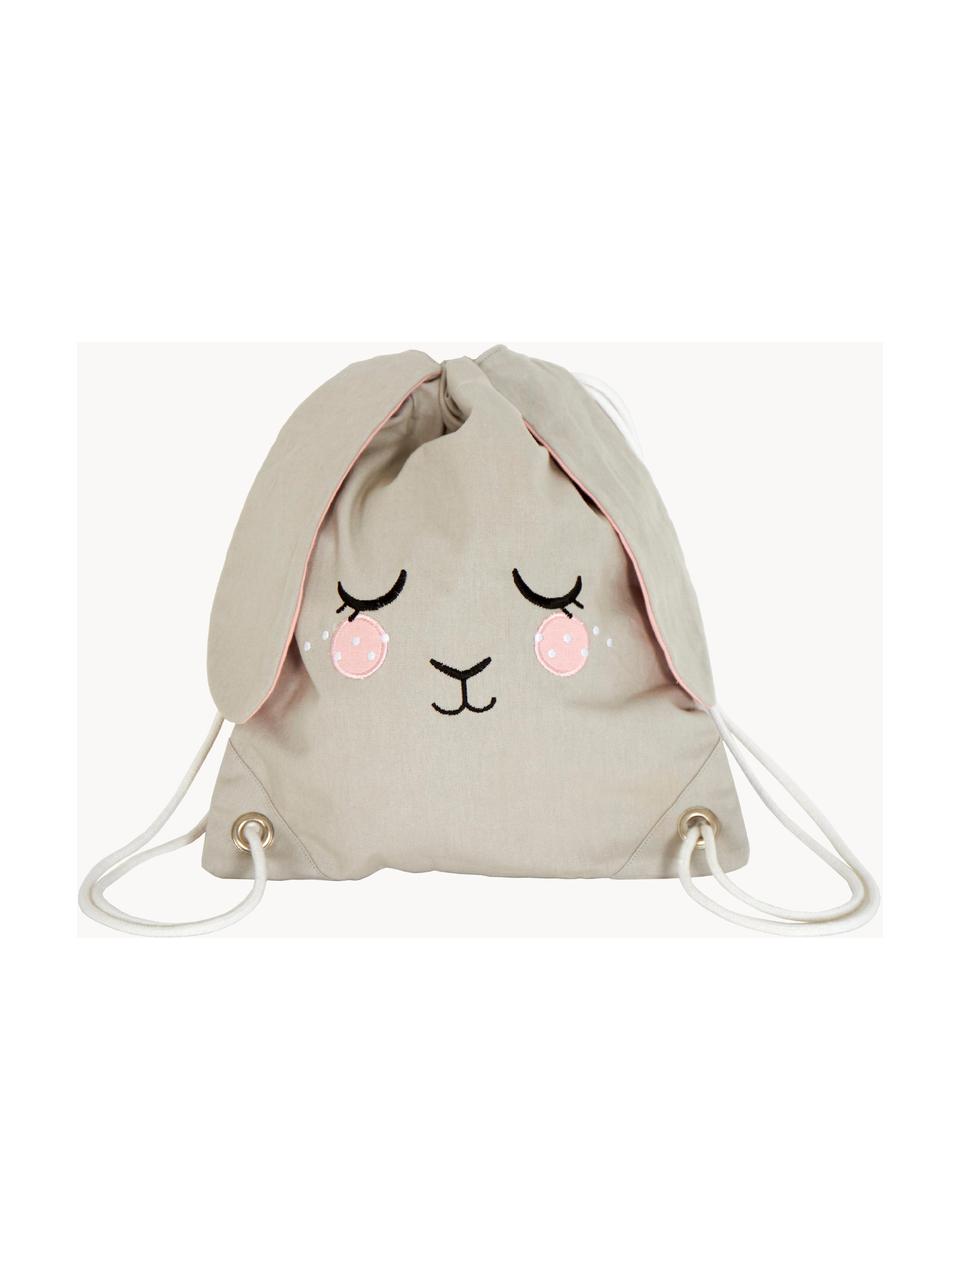 Plecak dla dzieci Bunny, 100% bawełna organiczna z certyfikatem GOTS, Greige, S 30 x W 35 cm